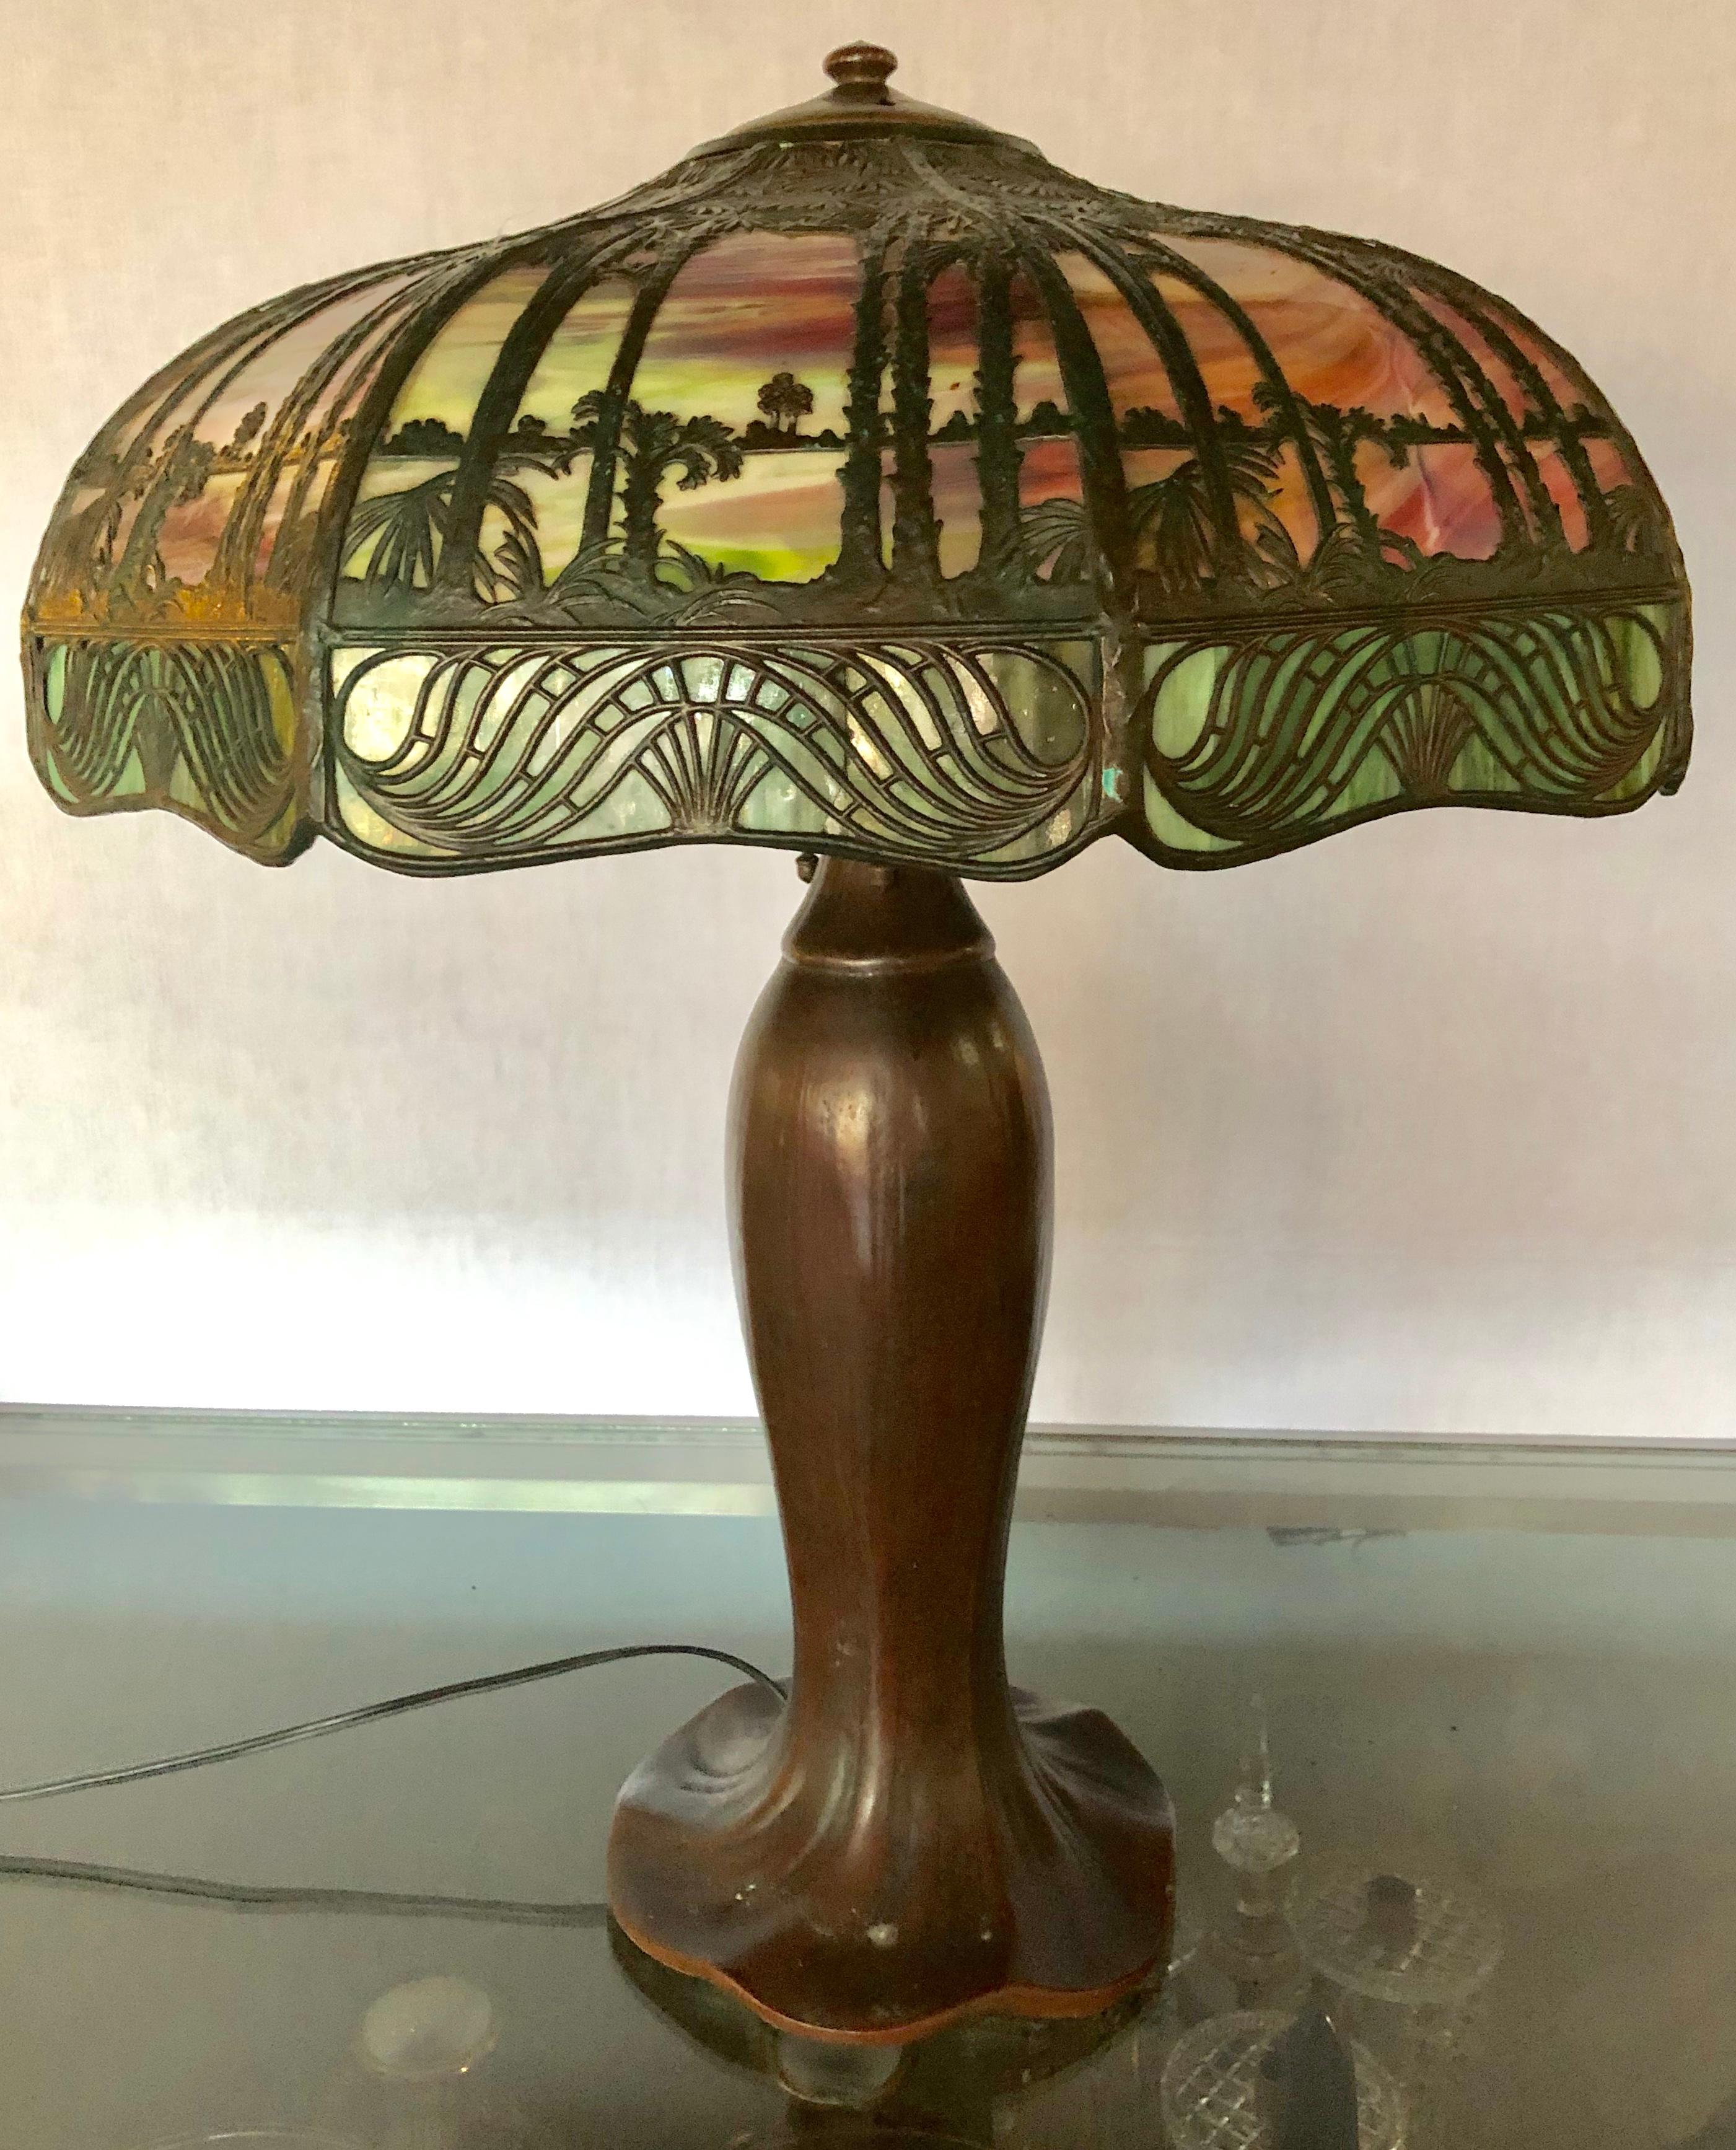 Lampe de table en forme de palmier de Handel signée sur la base et l'abat-jour Art & Crafts.

L'abat-jour mesure 7,5